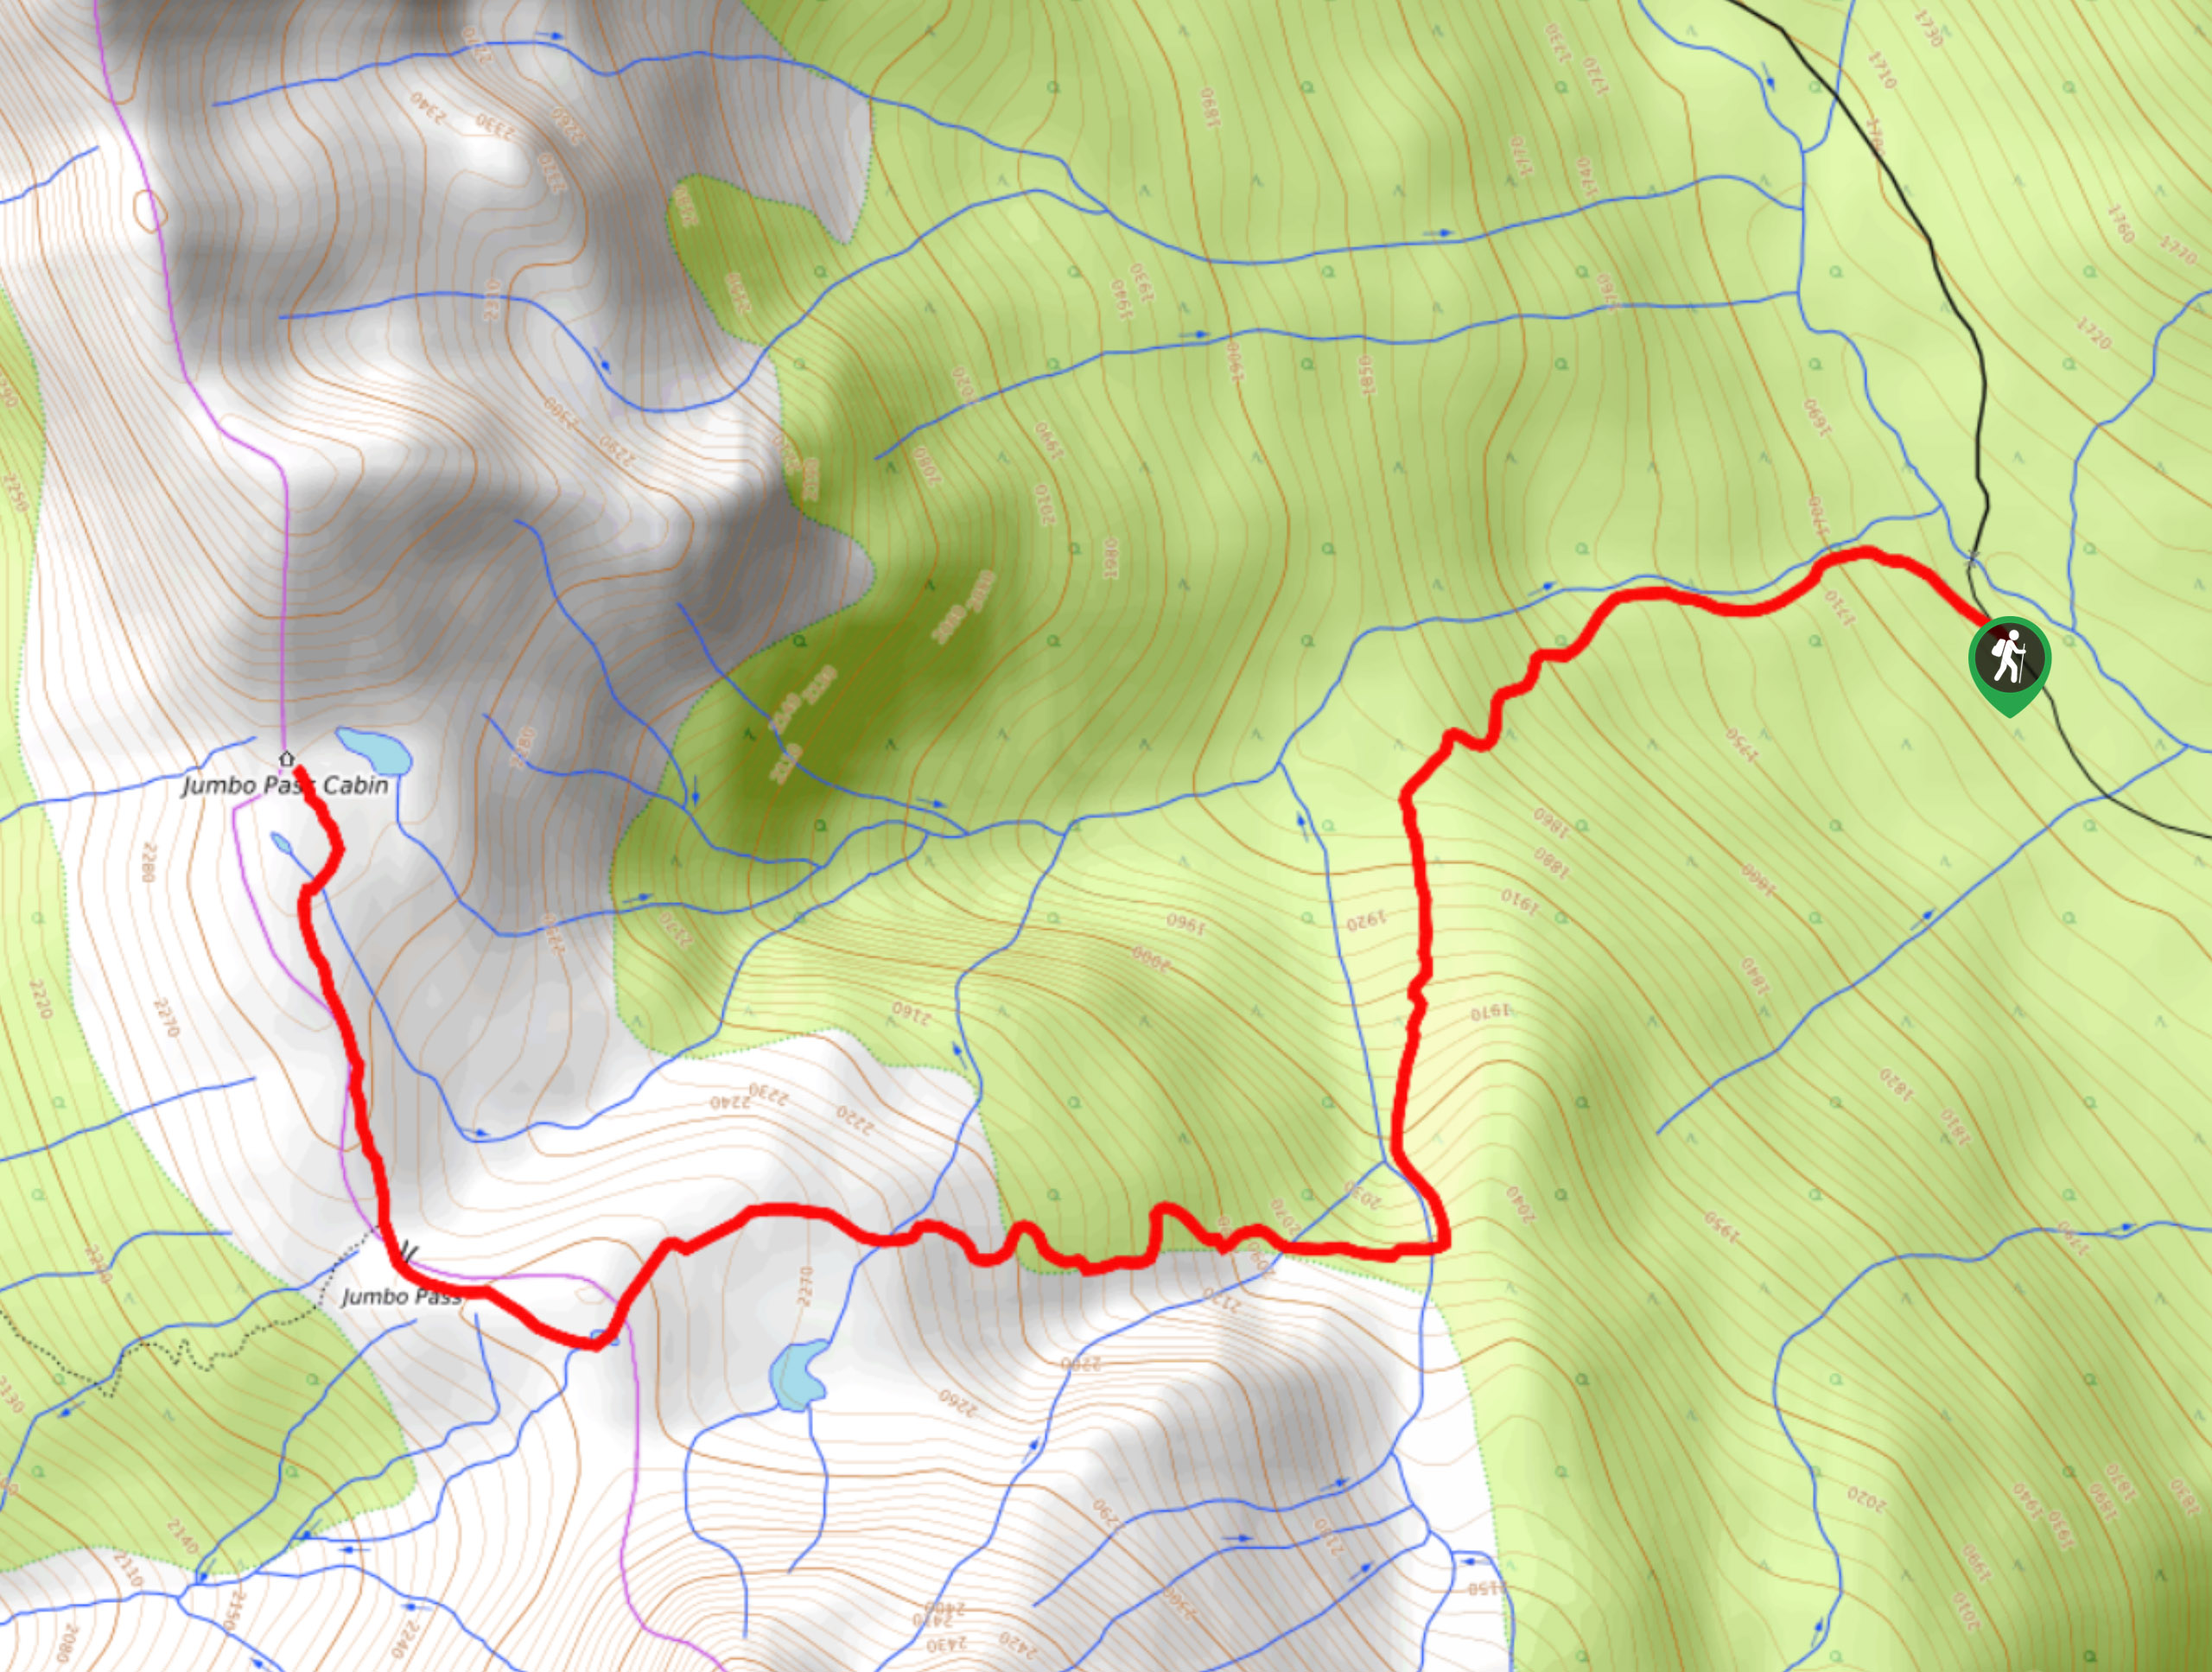 Jumbo Pass Trail Map